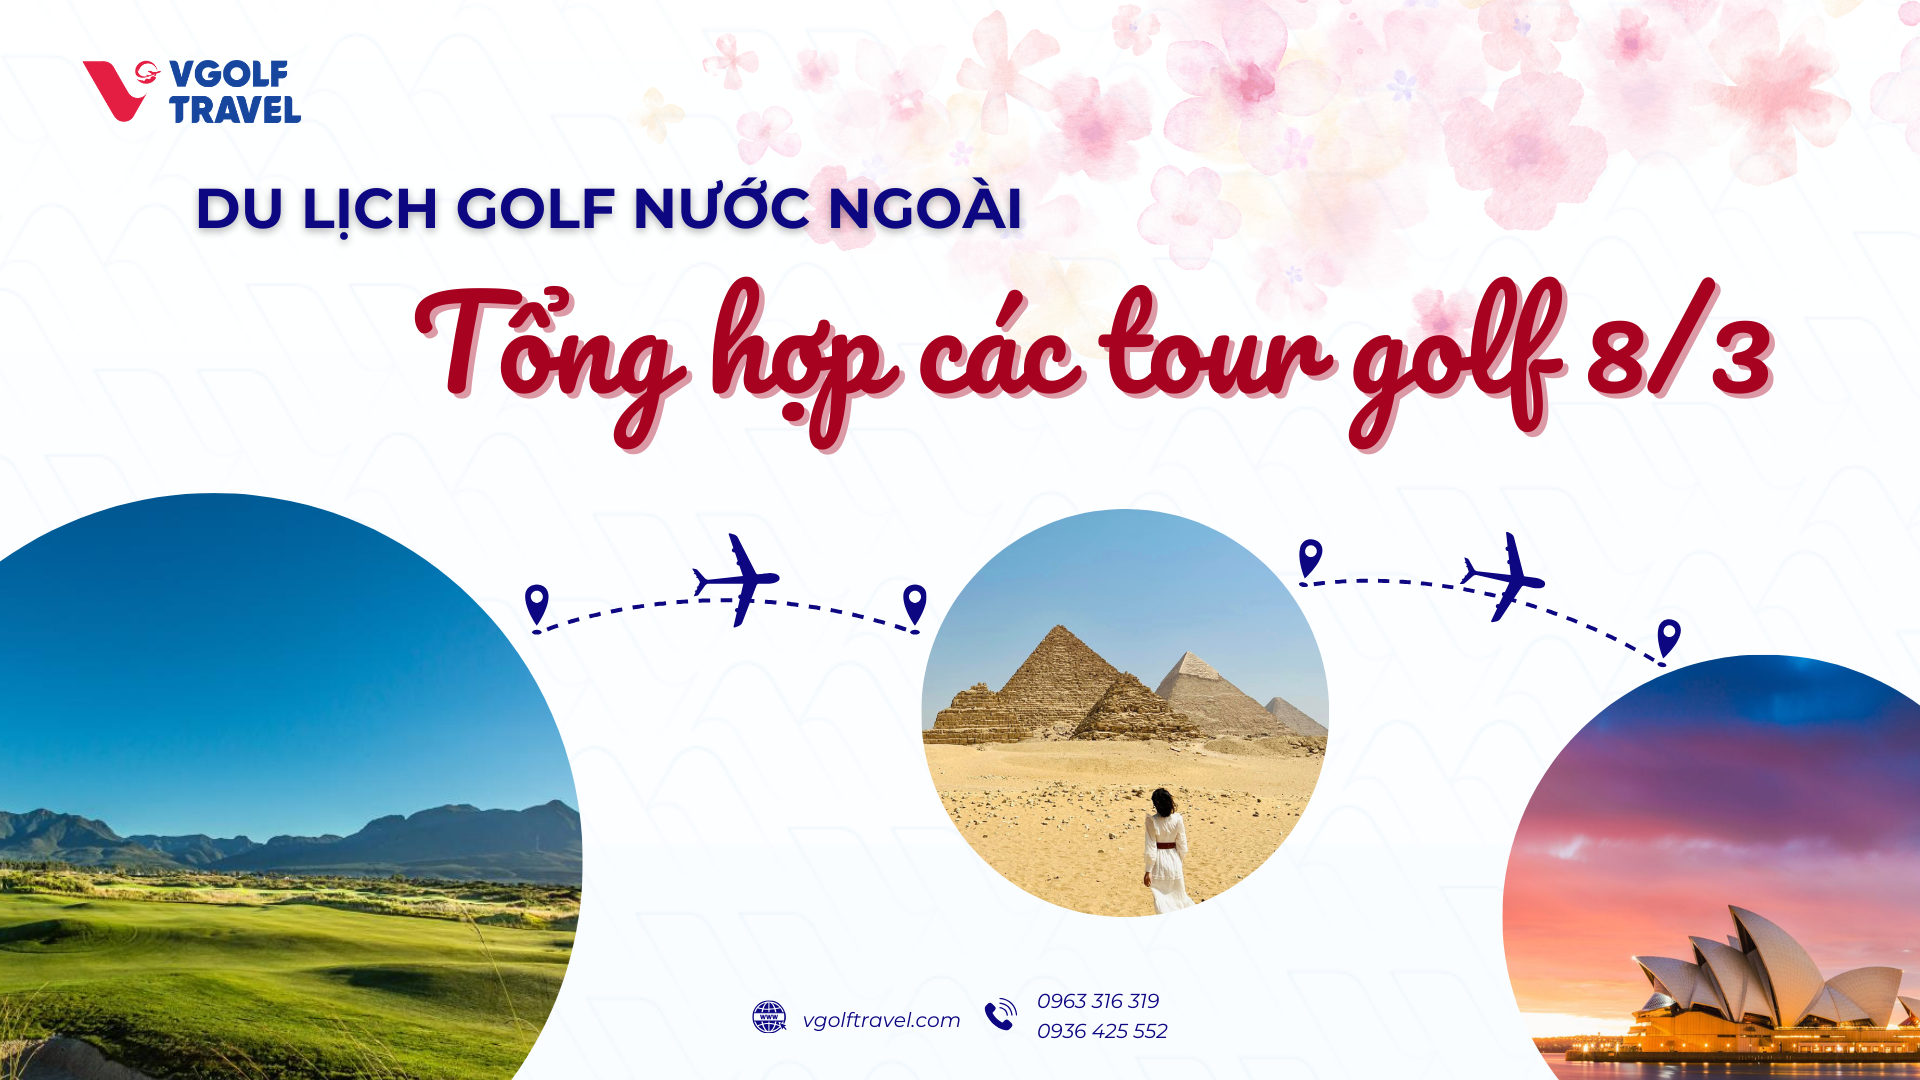 Du lịch golf nước ngoài: Tổng hợp các tour golf 8/3 lý tưởng nhất